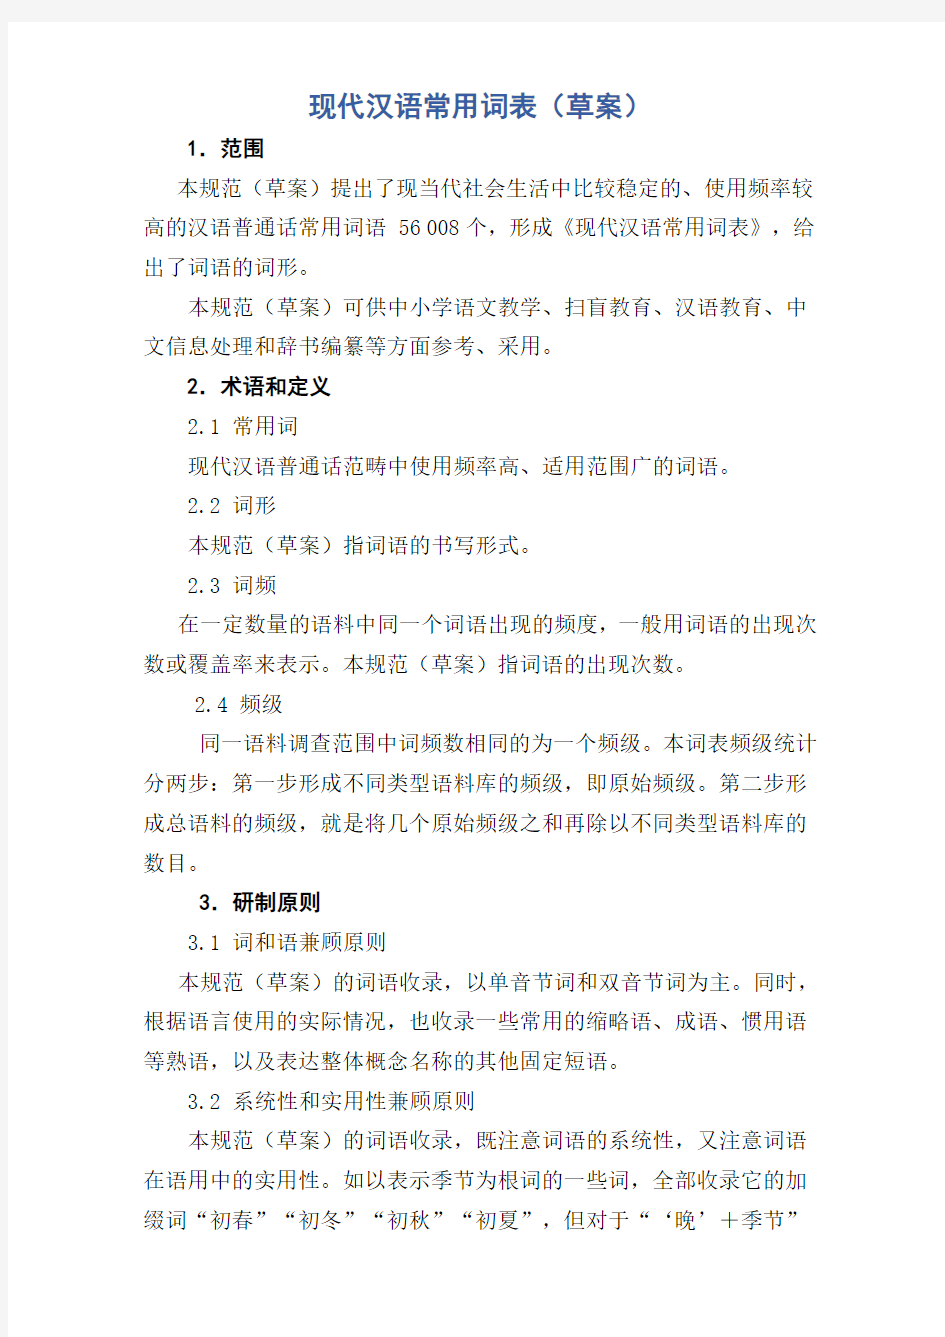 现代汉语常用词表草案